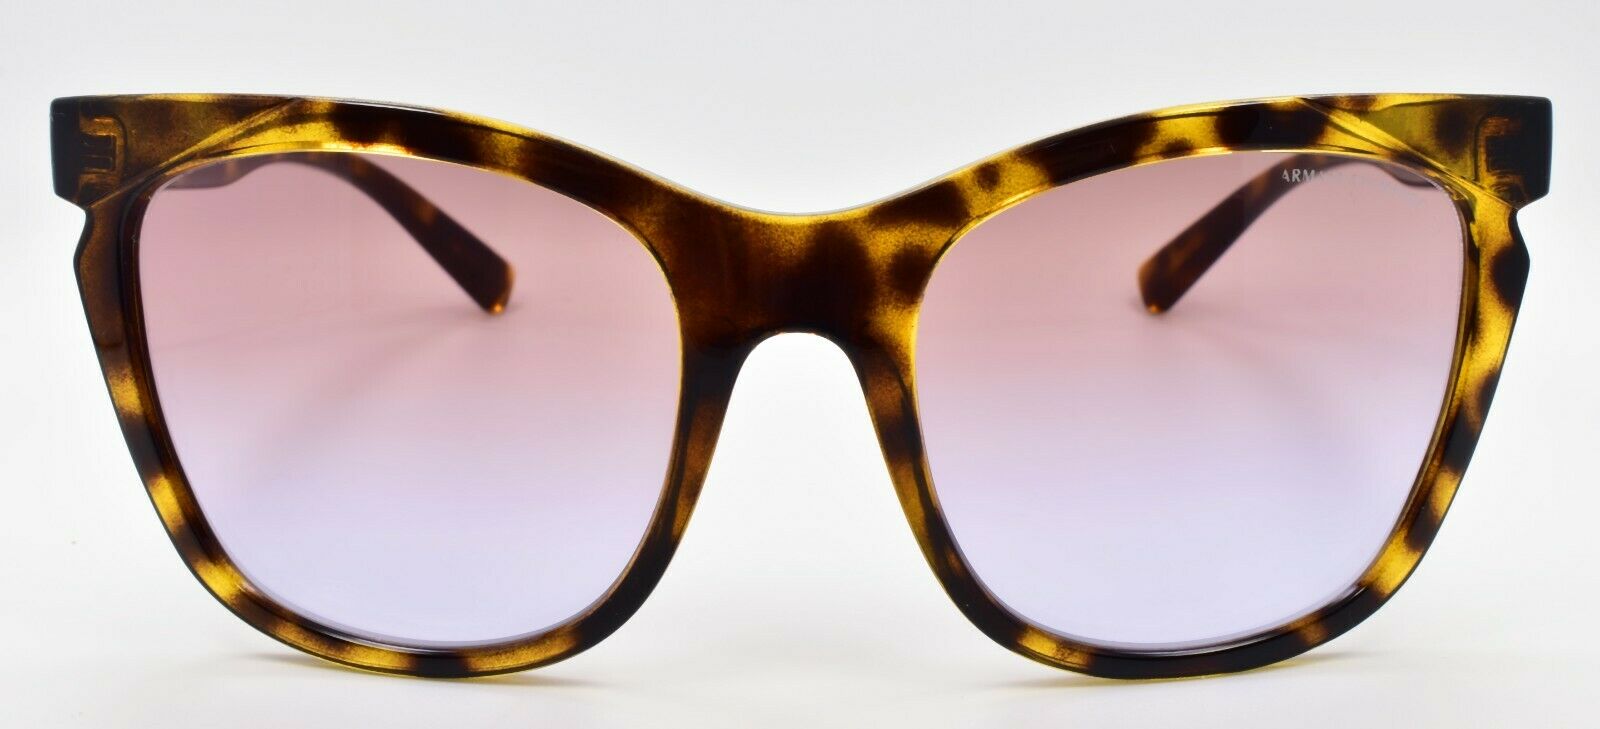 2-Armani Exchange AX4109S 82832F Women's Sunglasses Havana / Violet Gradient-7895653216839-IKSpecs